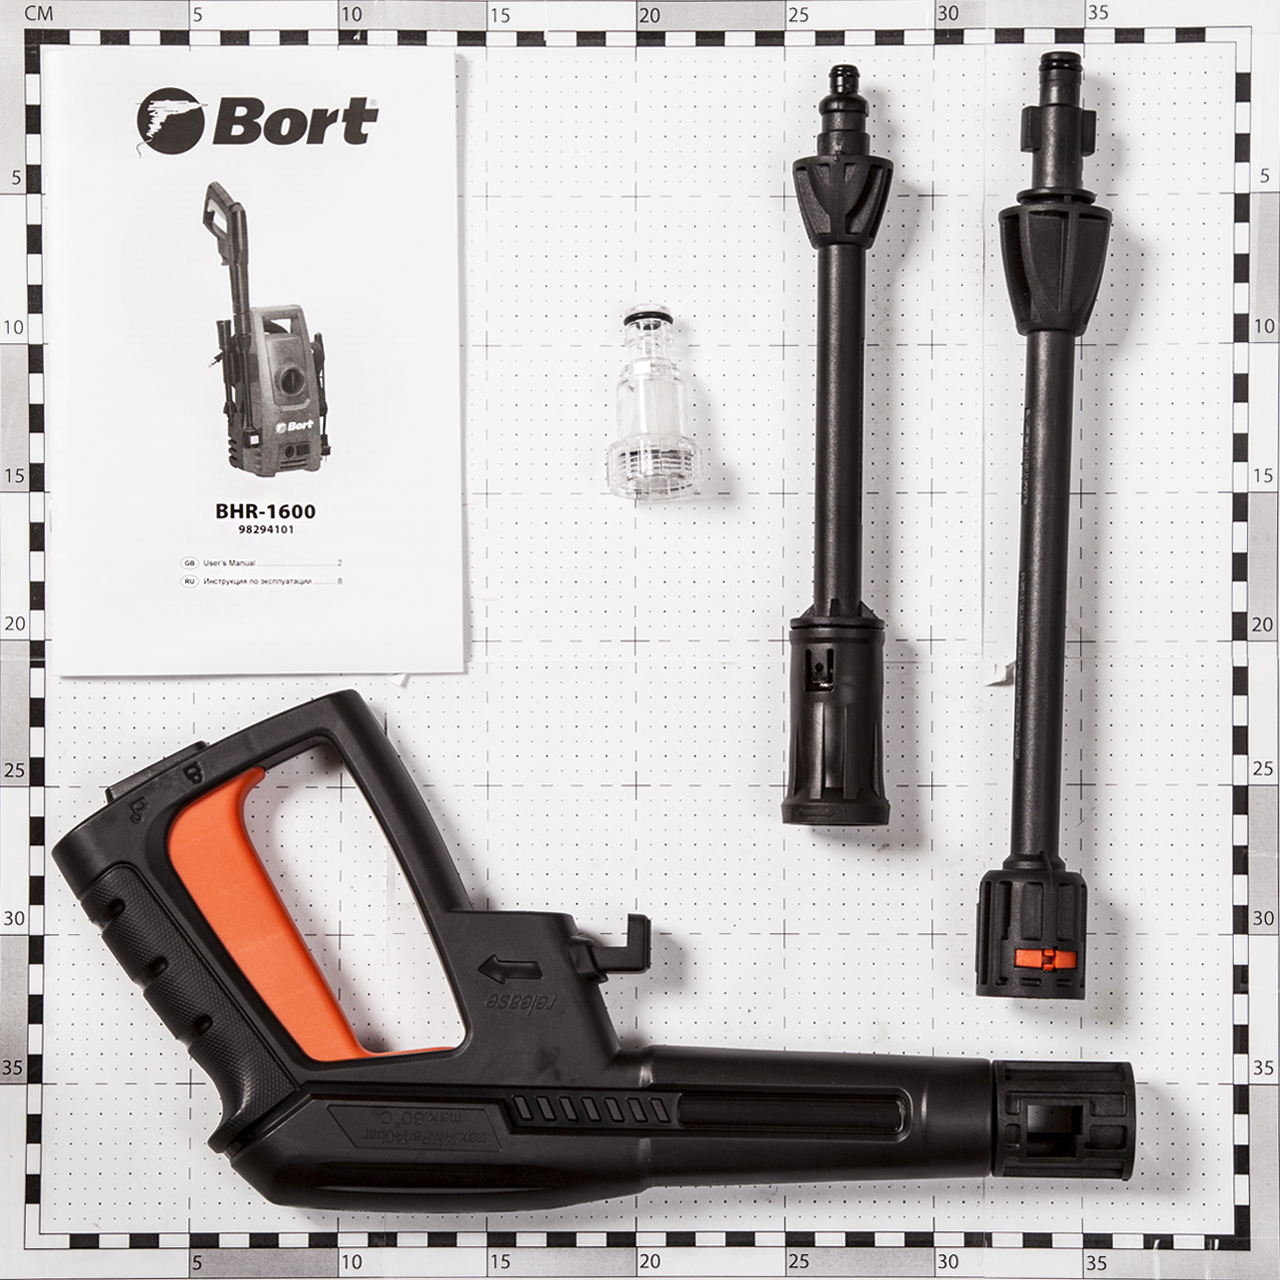    Bort BHR-1600 (98294101)